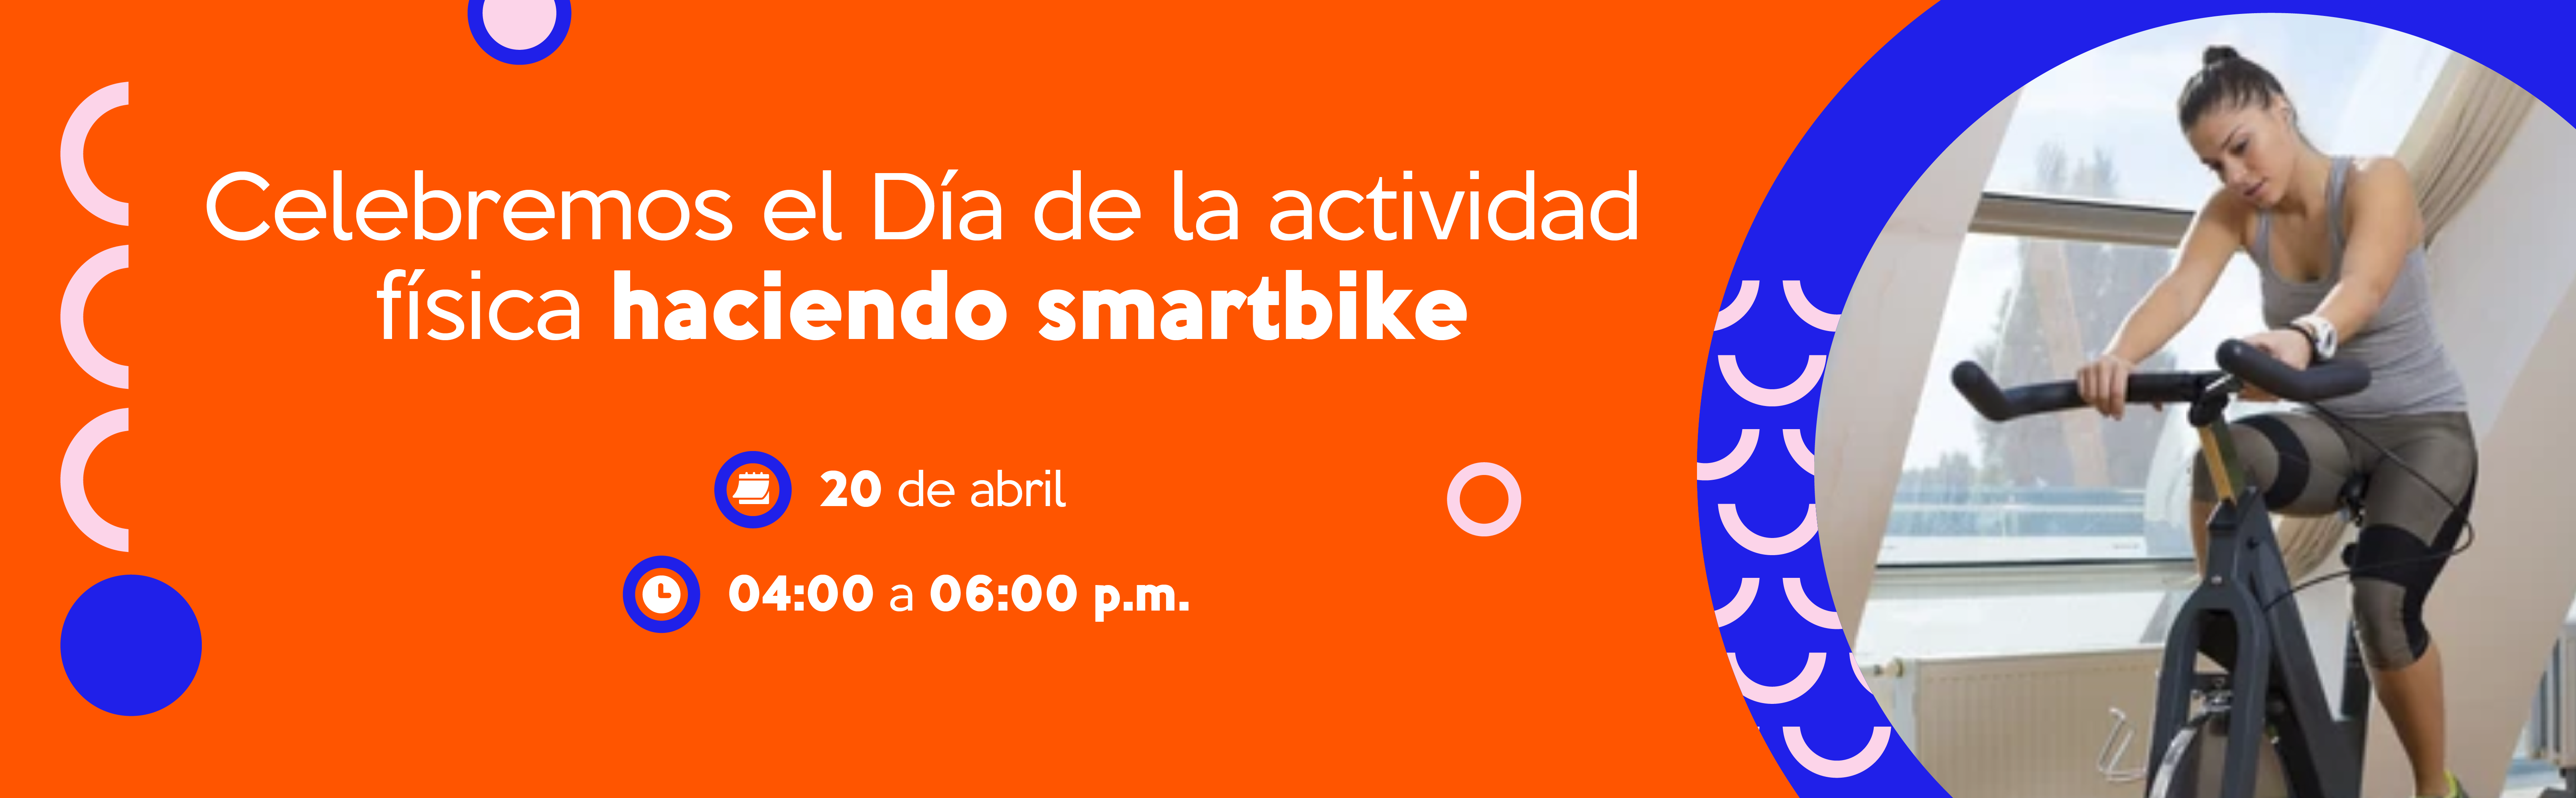 Celebremos el Día de la actividad física haciendo smartbike